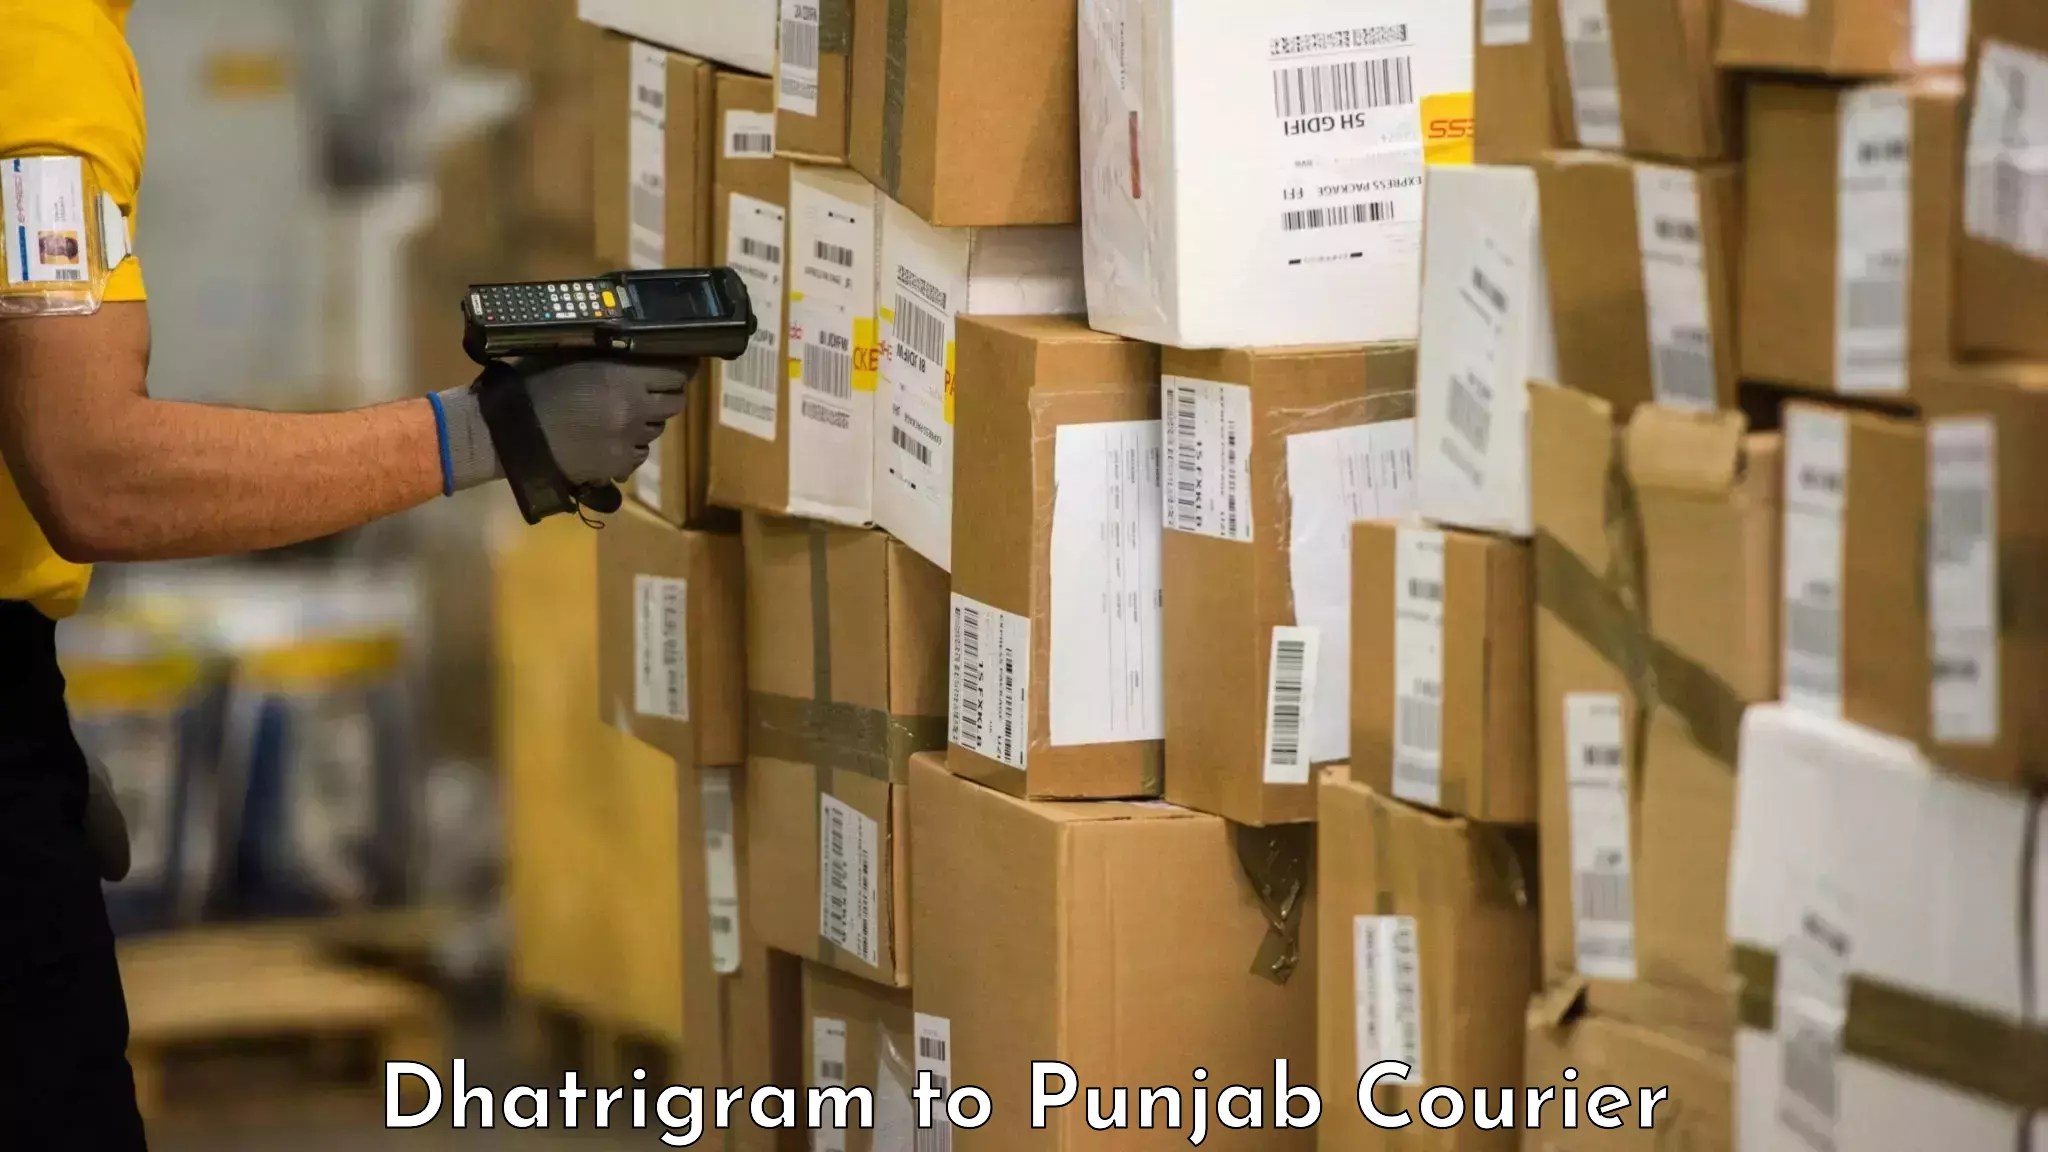 Baggage transport network Dhatrigram to Punjab